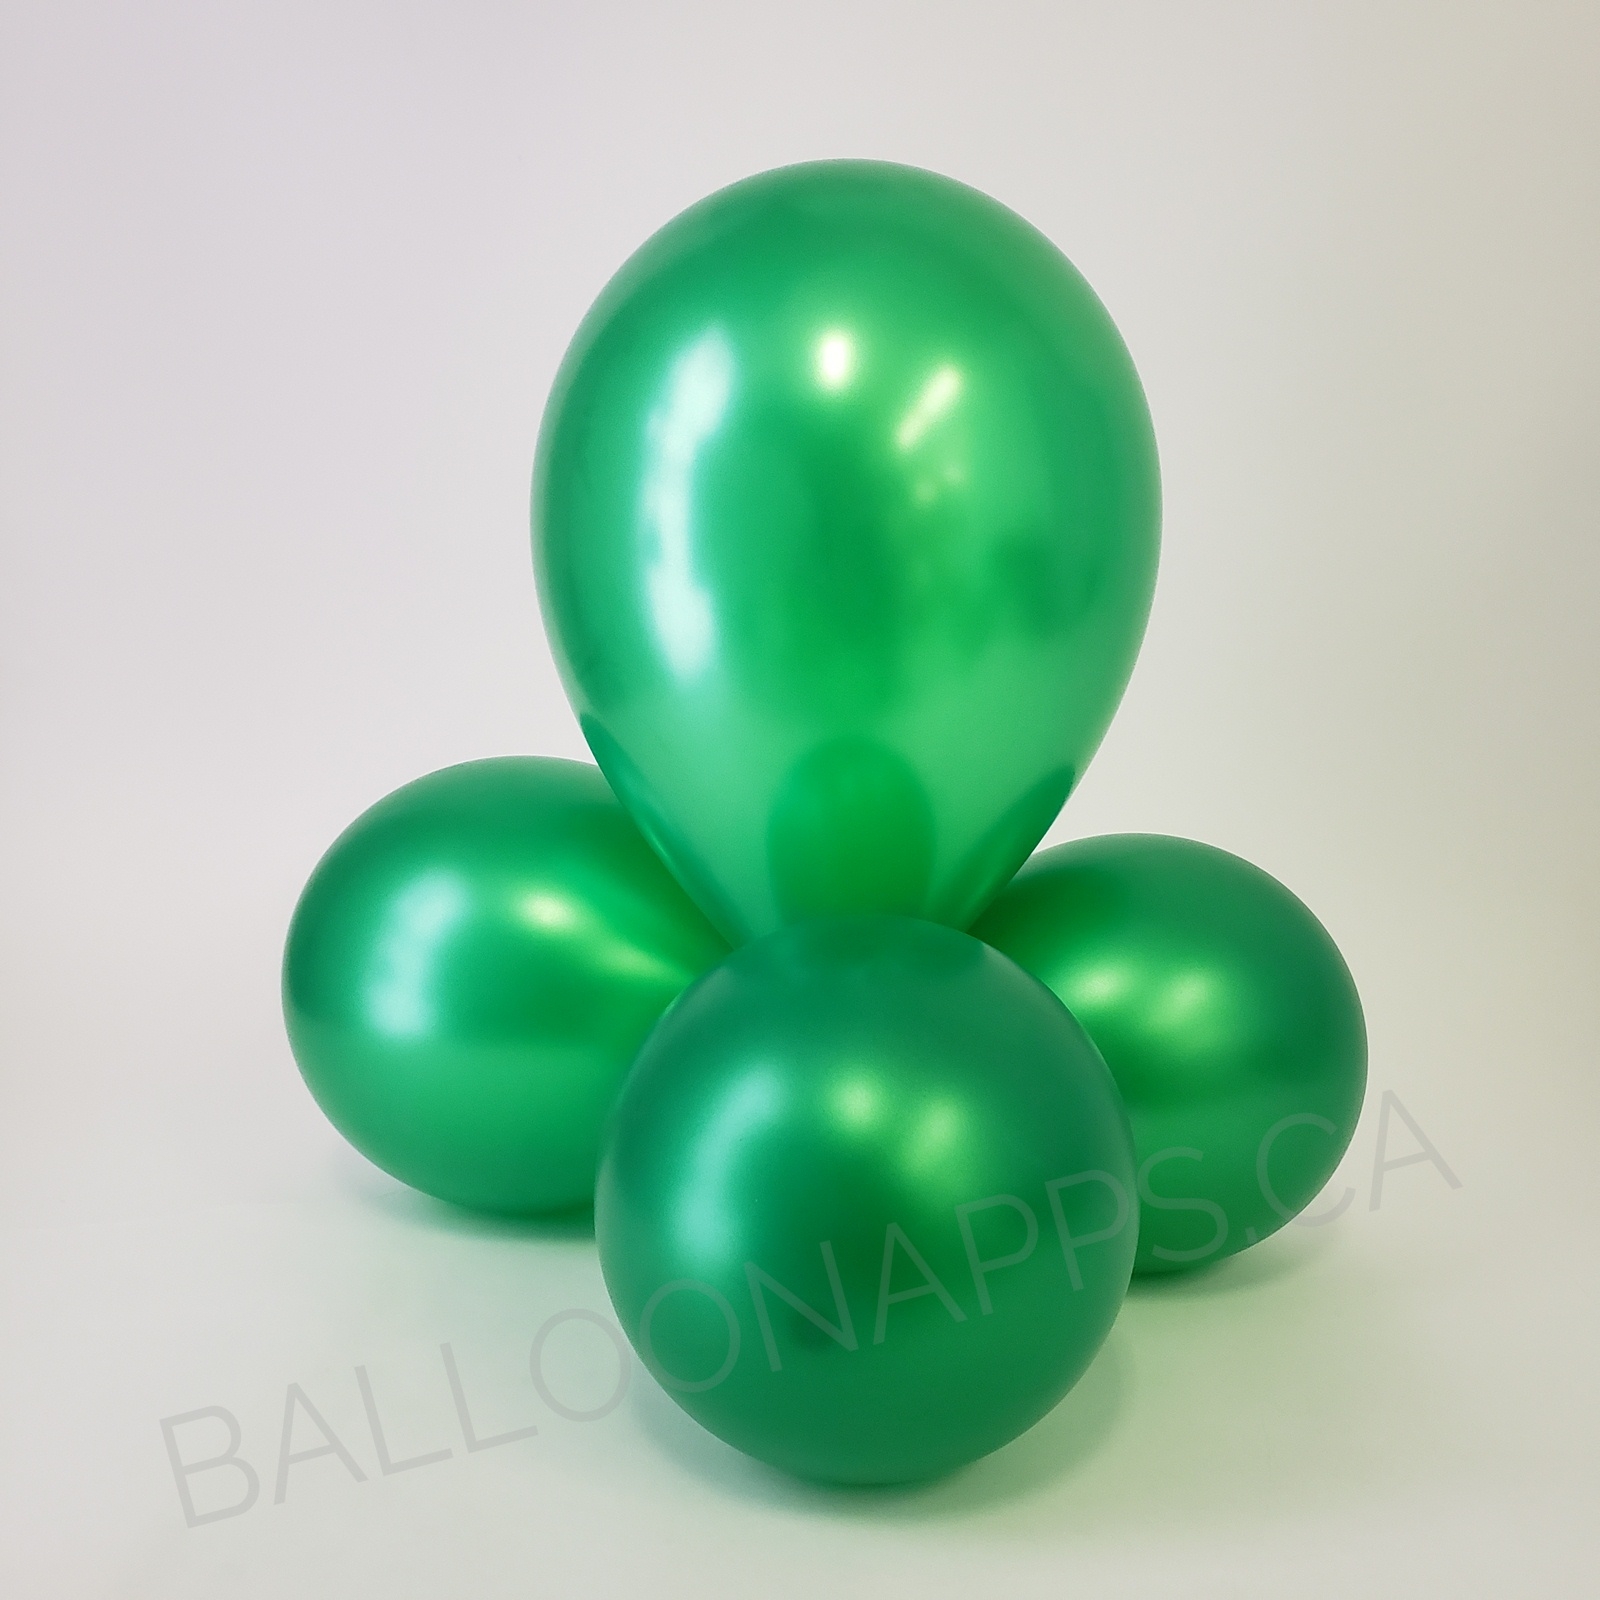 balloon texture BET (50) 260 Metallic Green balloons